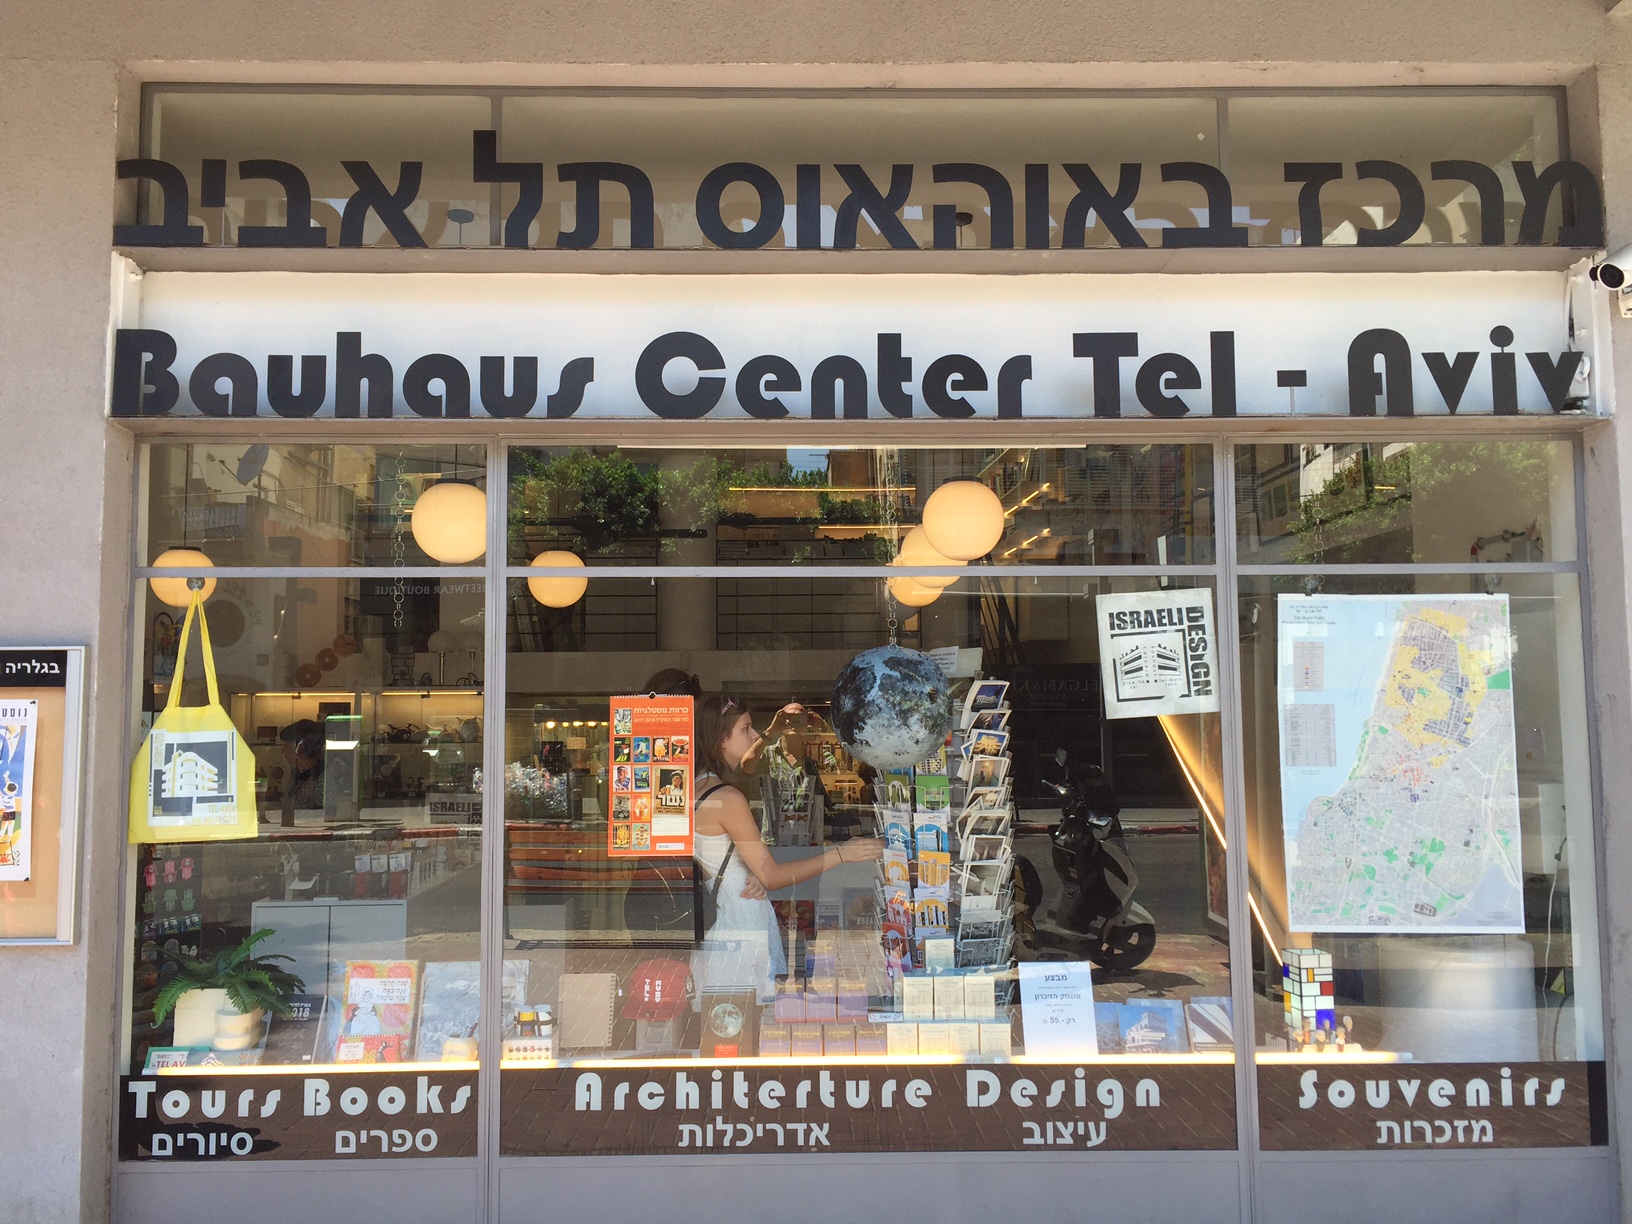 El White City Center abre sus puertas en Tel Aviv por el centenario de la Bahauaus